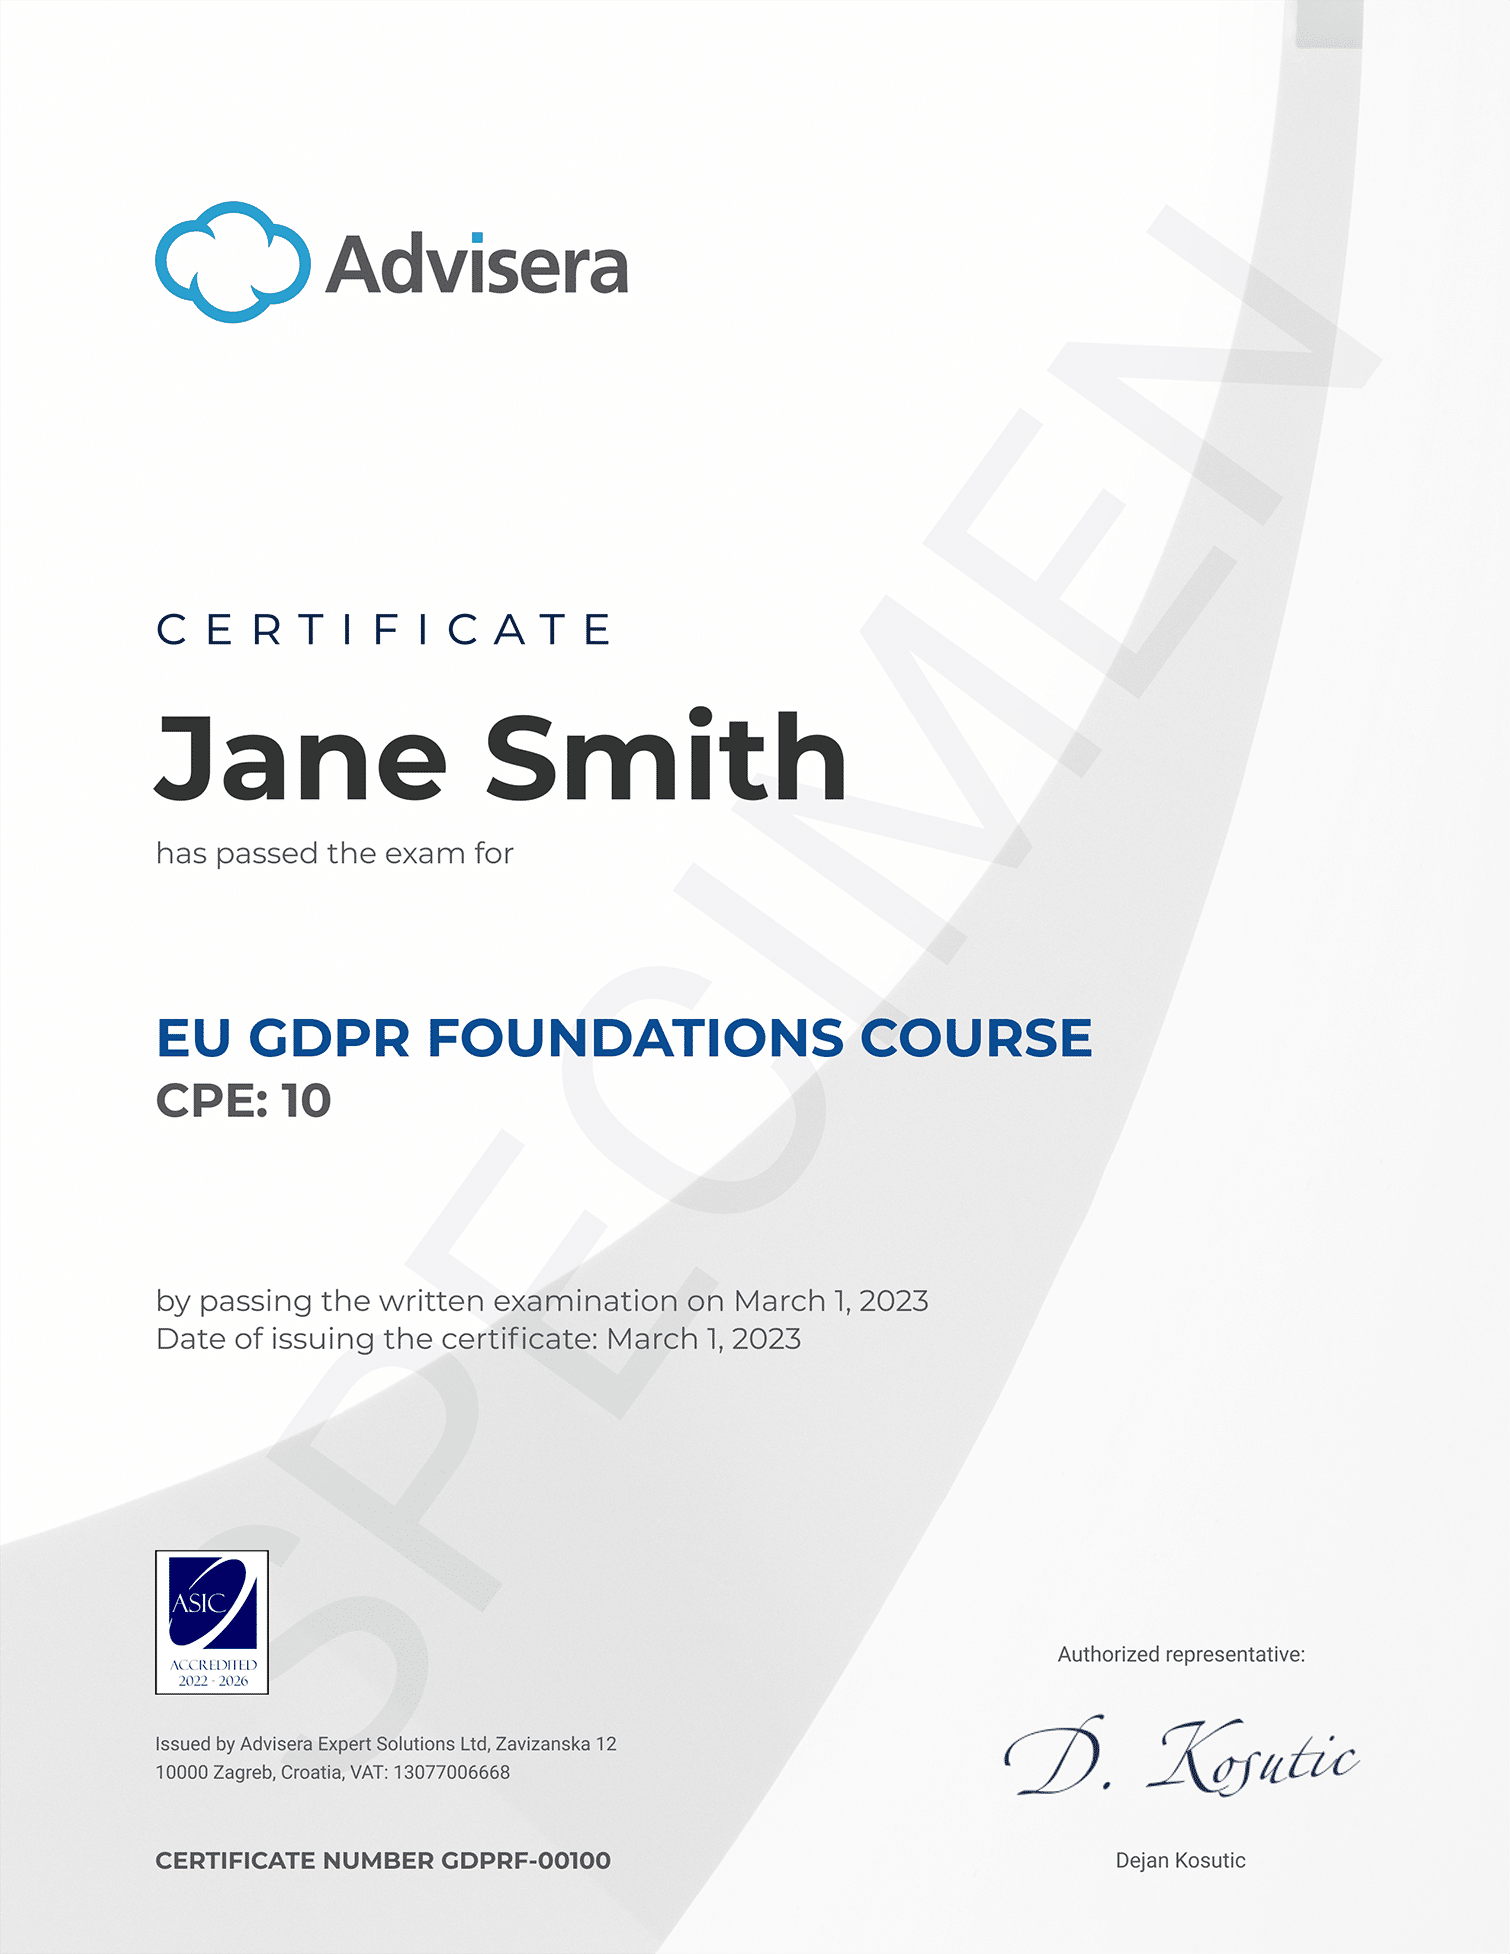 EU GDPR Foundations Course - Advisera